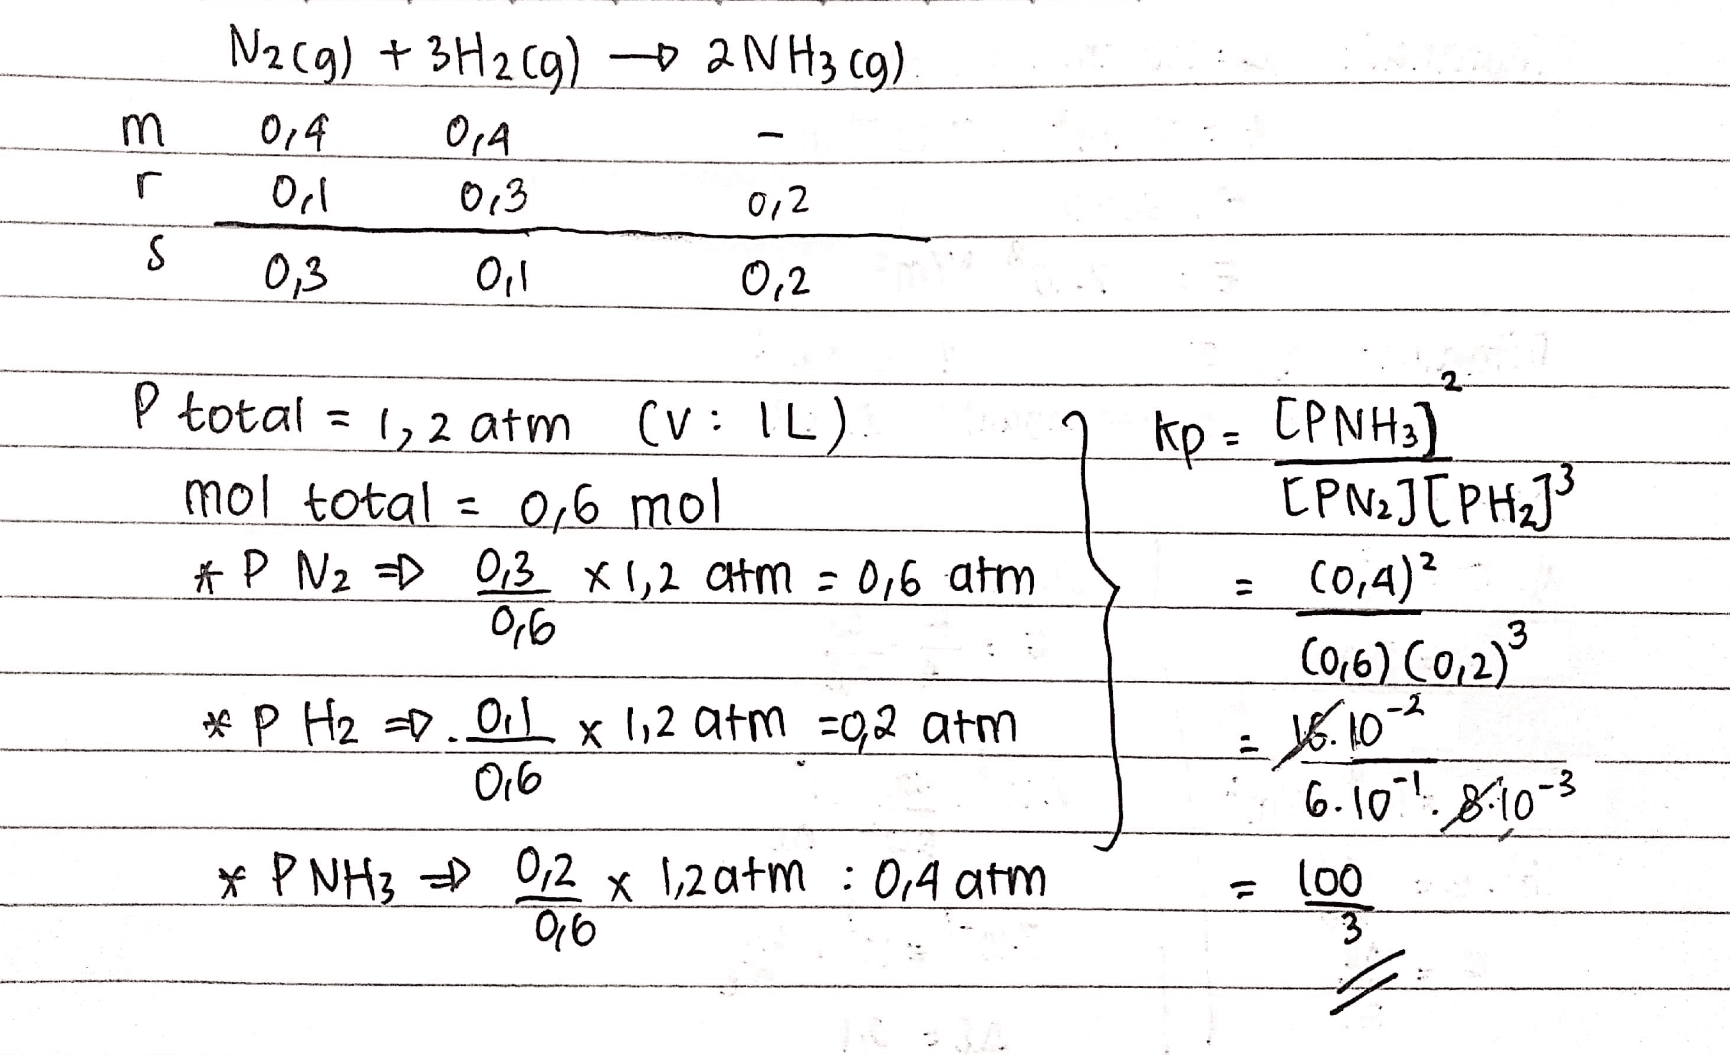 m r N2(g) + 3H2(g) 2NH3 (9) 0,4 0,4 Orl 0,3 0,2 0,3 Oil 0,2 S 2 kp - CPNH3) P total = 1,2 atm (V: 1L) mol total = 0,6 mol * P N2 = 0,3 X 1,2 atm = 0,6 atm 0,6 - CPNJTPH] 20,4)? (06) (0,2) 16.10-2 6.10.98-10-3 * p H2 =0.0.1 x 1,2 atm =0,2 arm 016 * P NH3 = 0,2 x 1,2 atm : 0,4 arm 06 il 100 3 